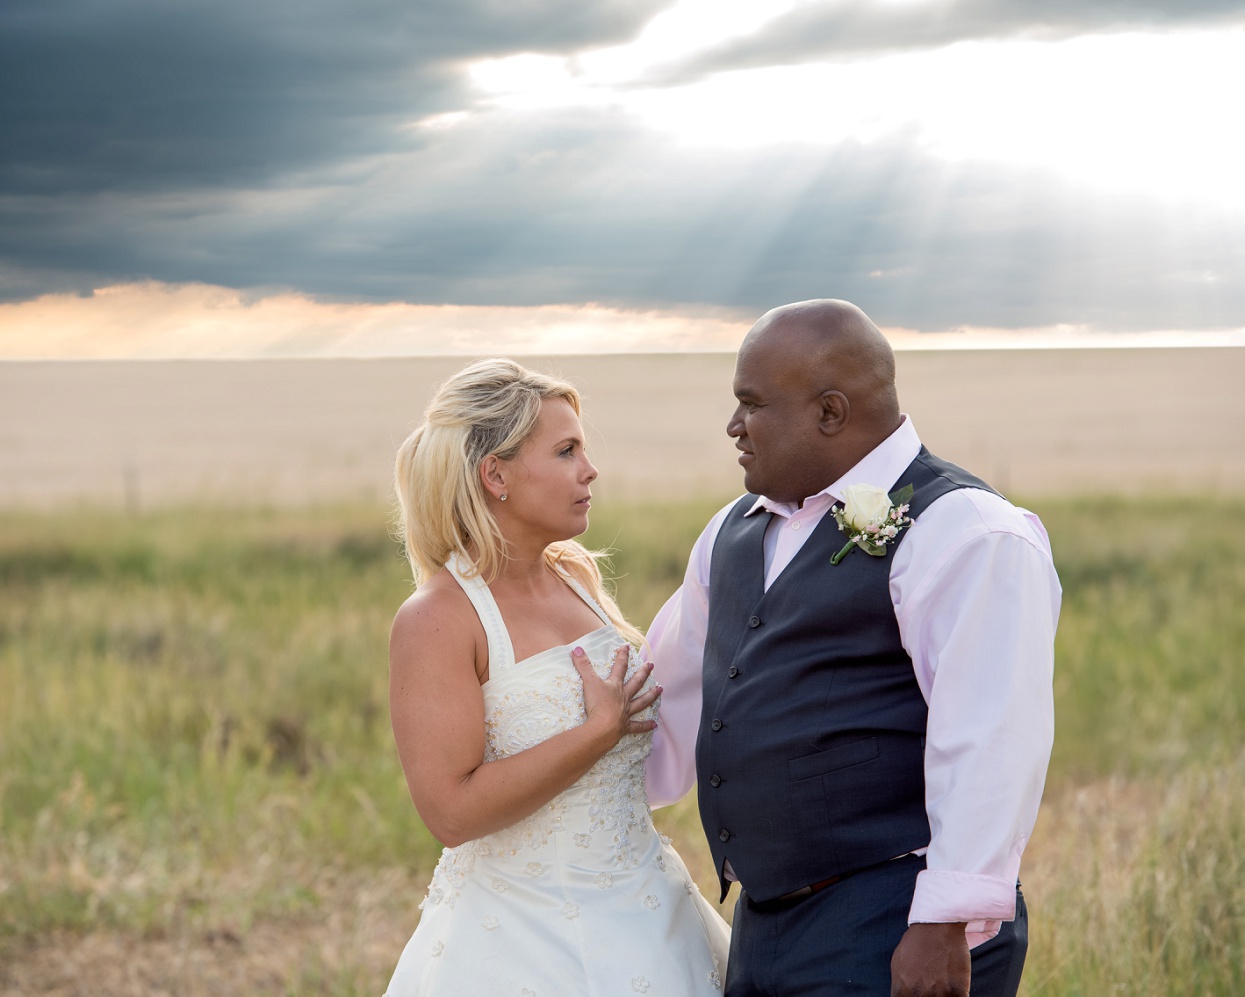 Beautiful Colorado plains sunset wedding photos